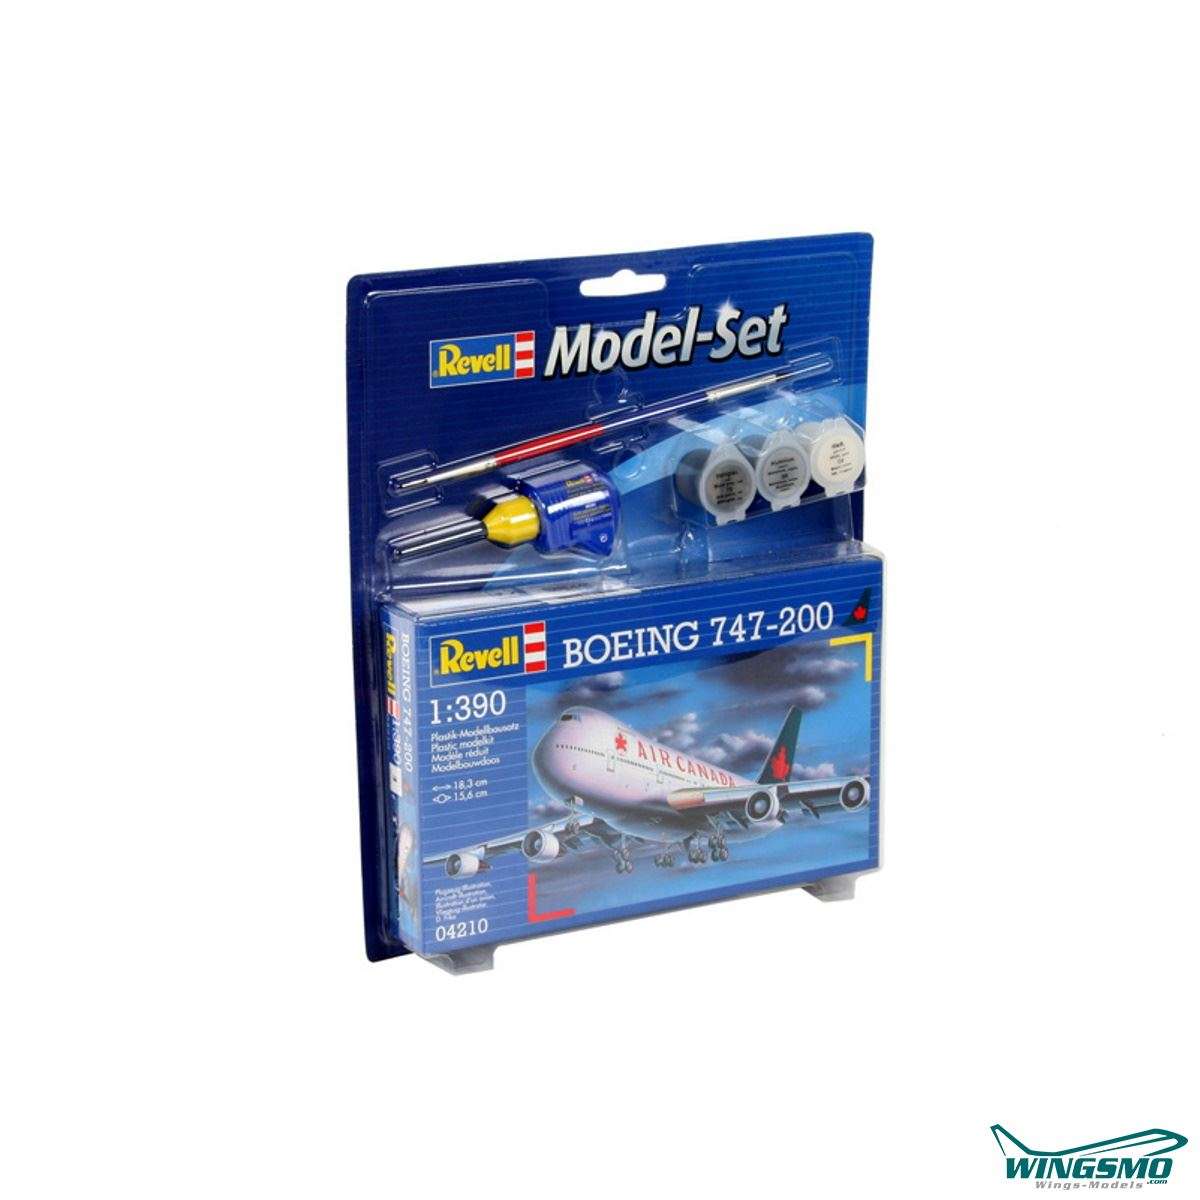 Revell Model Sets Boeing 747-200 1:390 64210